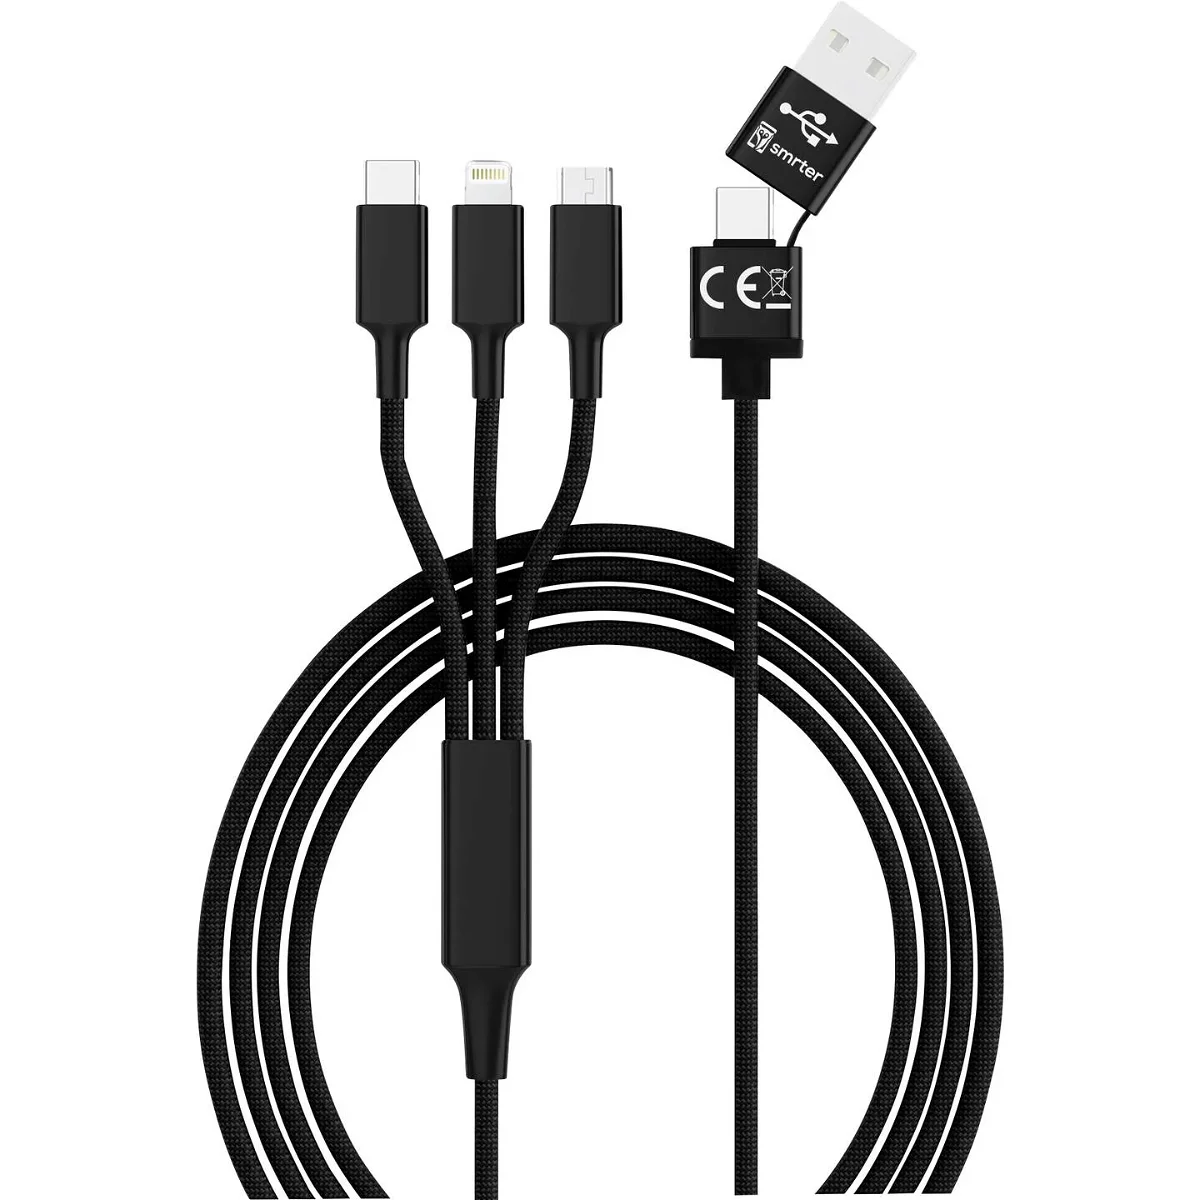 Smrter USB-Ladekabel USB 2.0 USB-A Stecker, USB-C® Stecker, Apple Lightning Stecker, USB-Micro-B Stecker 1.20 m Black